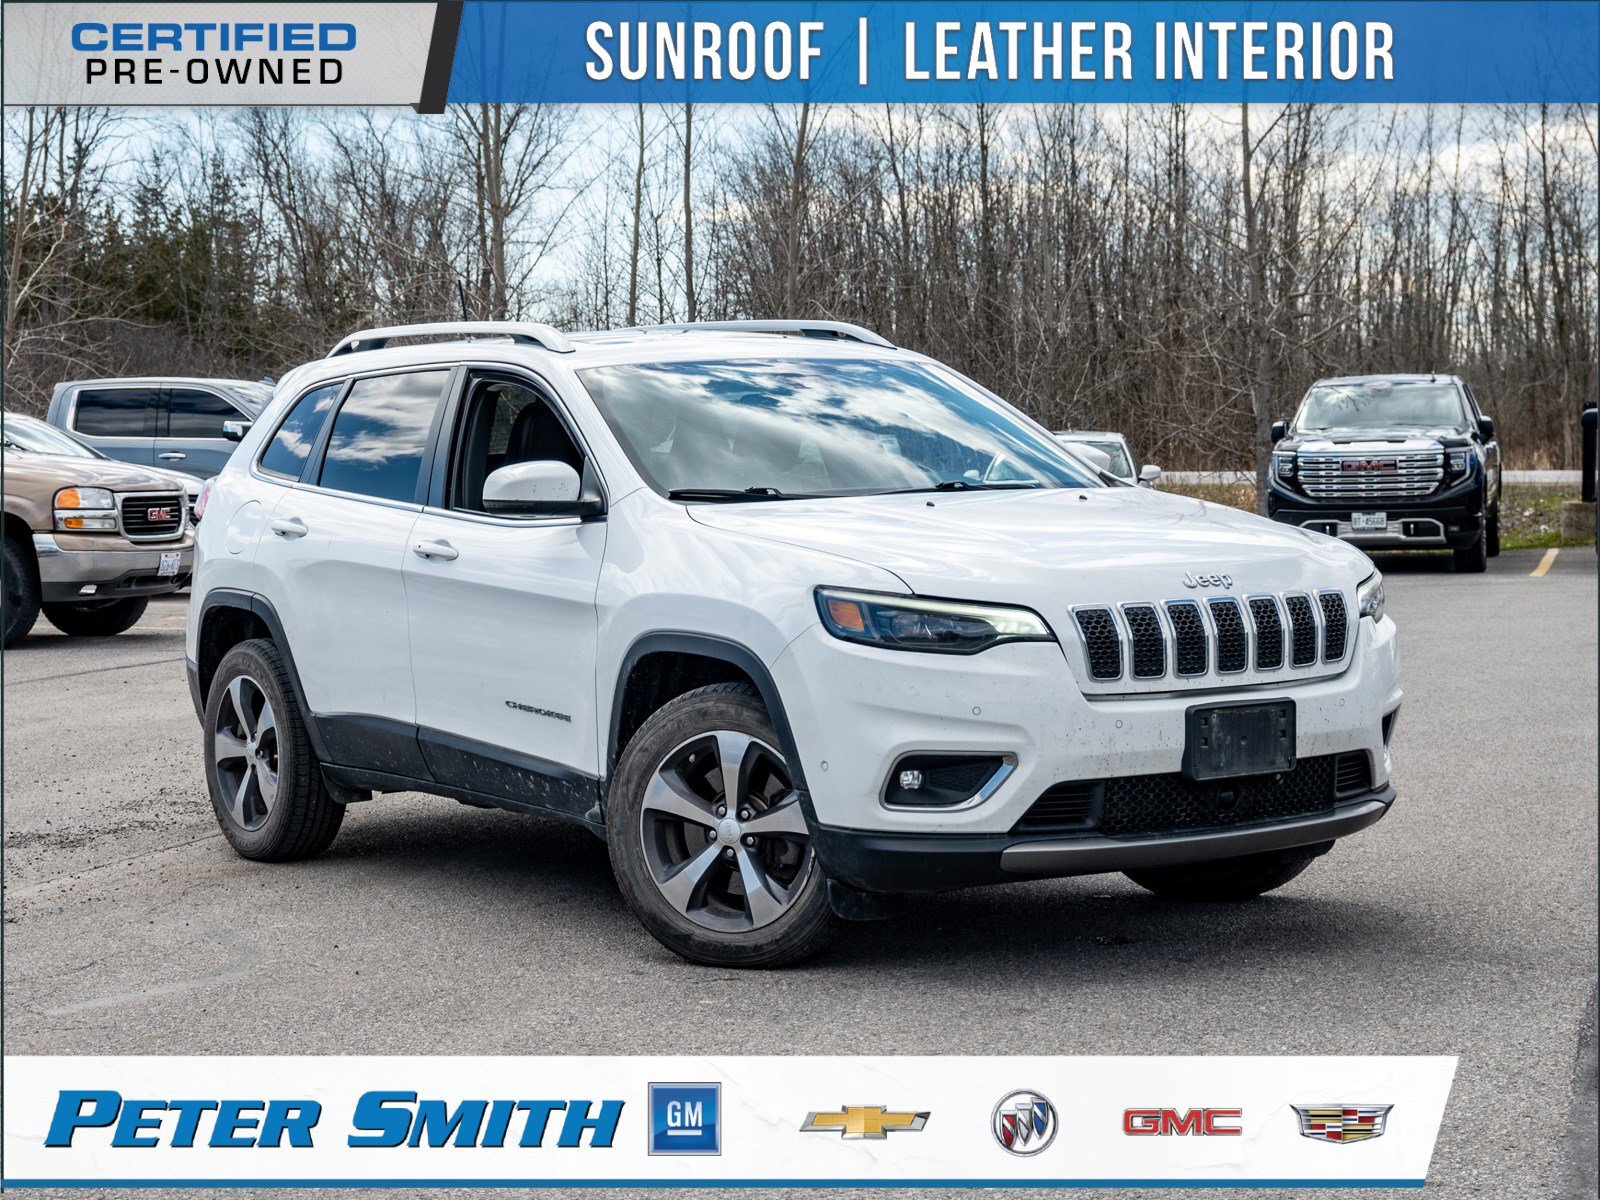 2019 Jeep Cherokee Limited - 3.2L Pentastar VVT V6 w/ESS | Sunroof | 